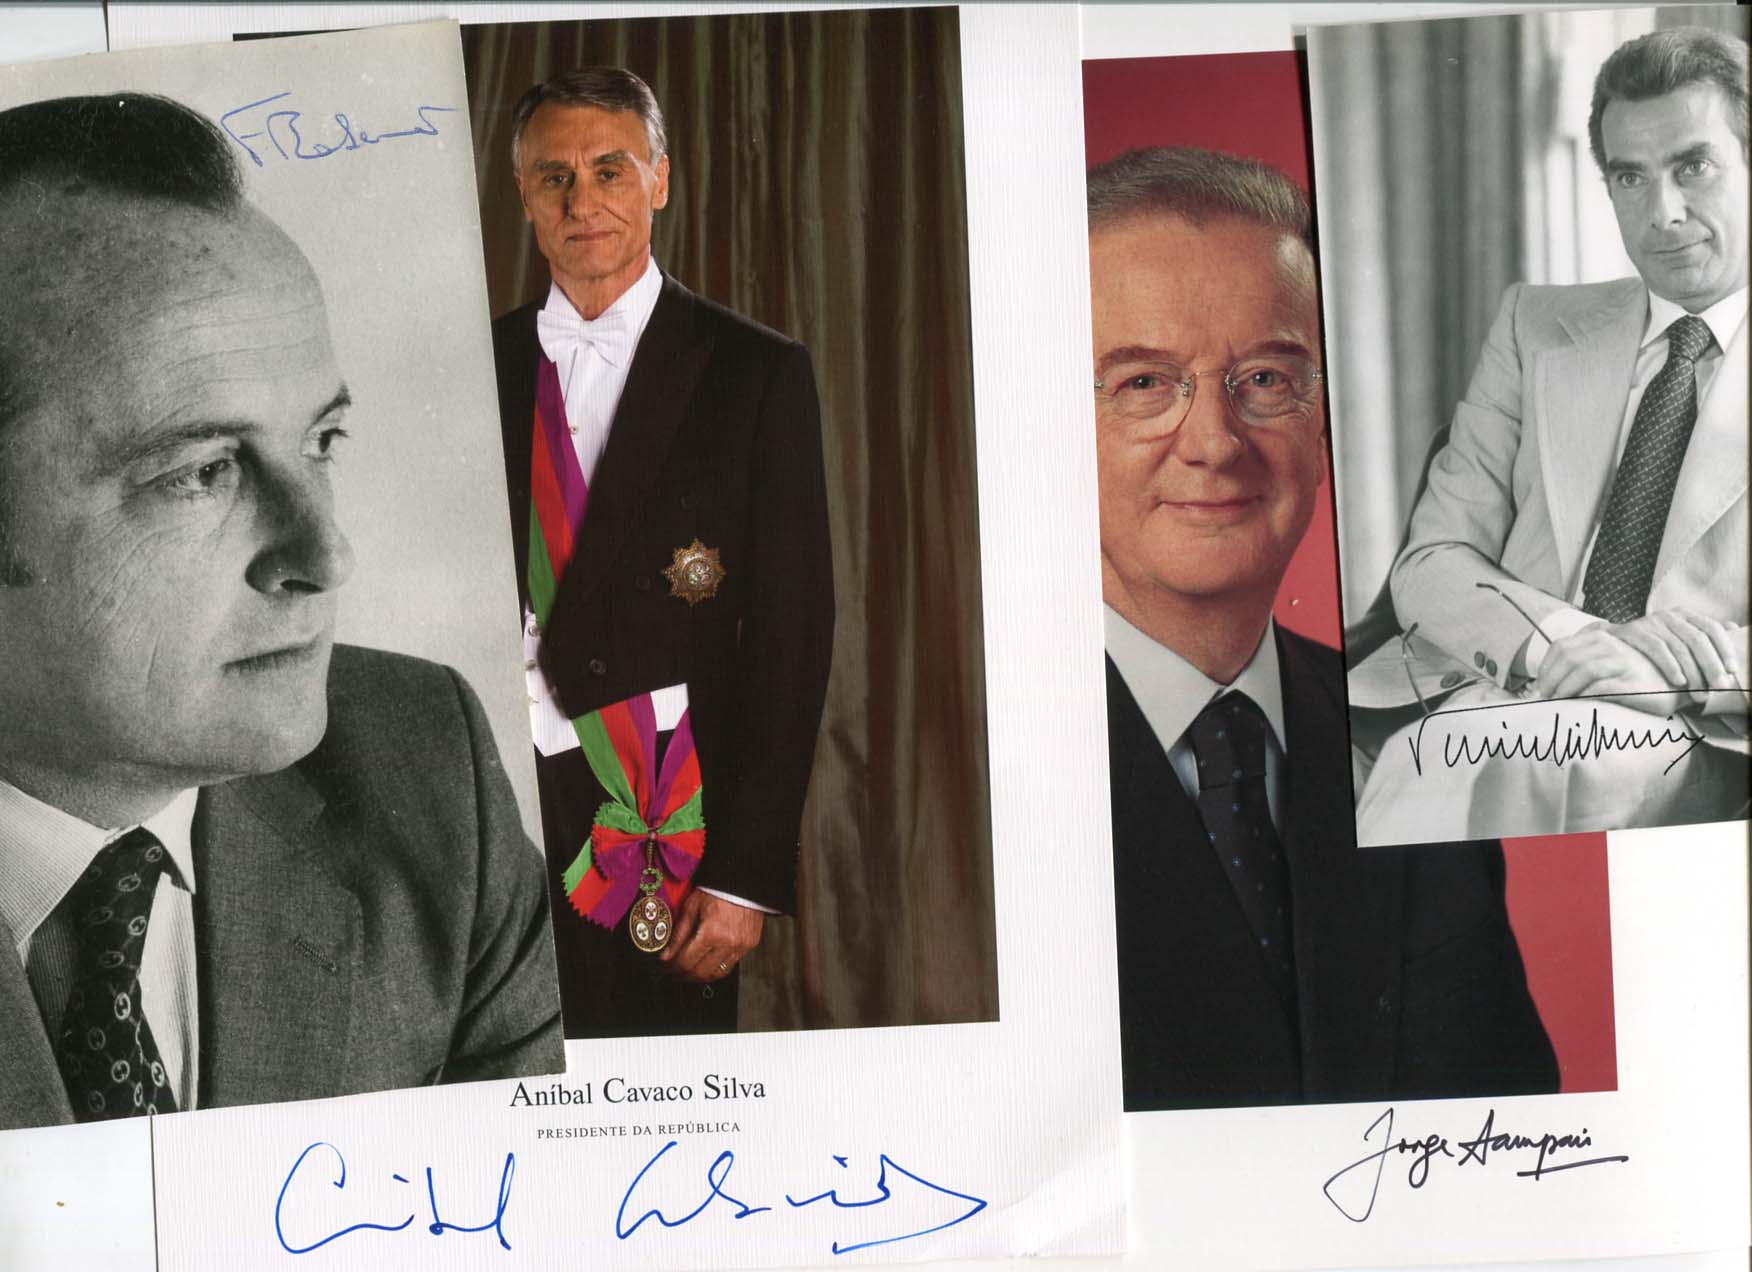 Jorge , Anibal, Pinto &amp; Francisco Sampaio, Cavaco Silva, Balsemao &amp; de Sa Carneiro Autograph Autogramm | ID 7901858791573